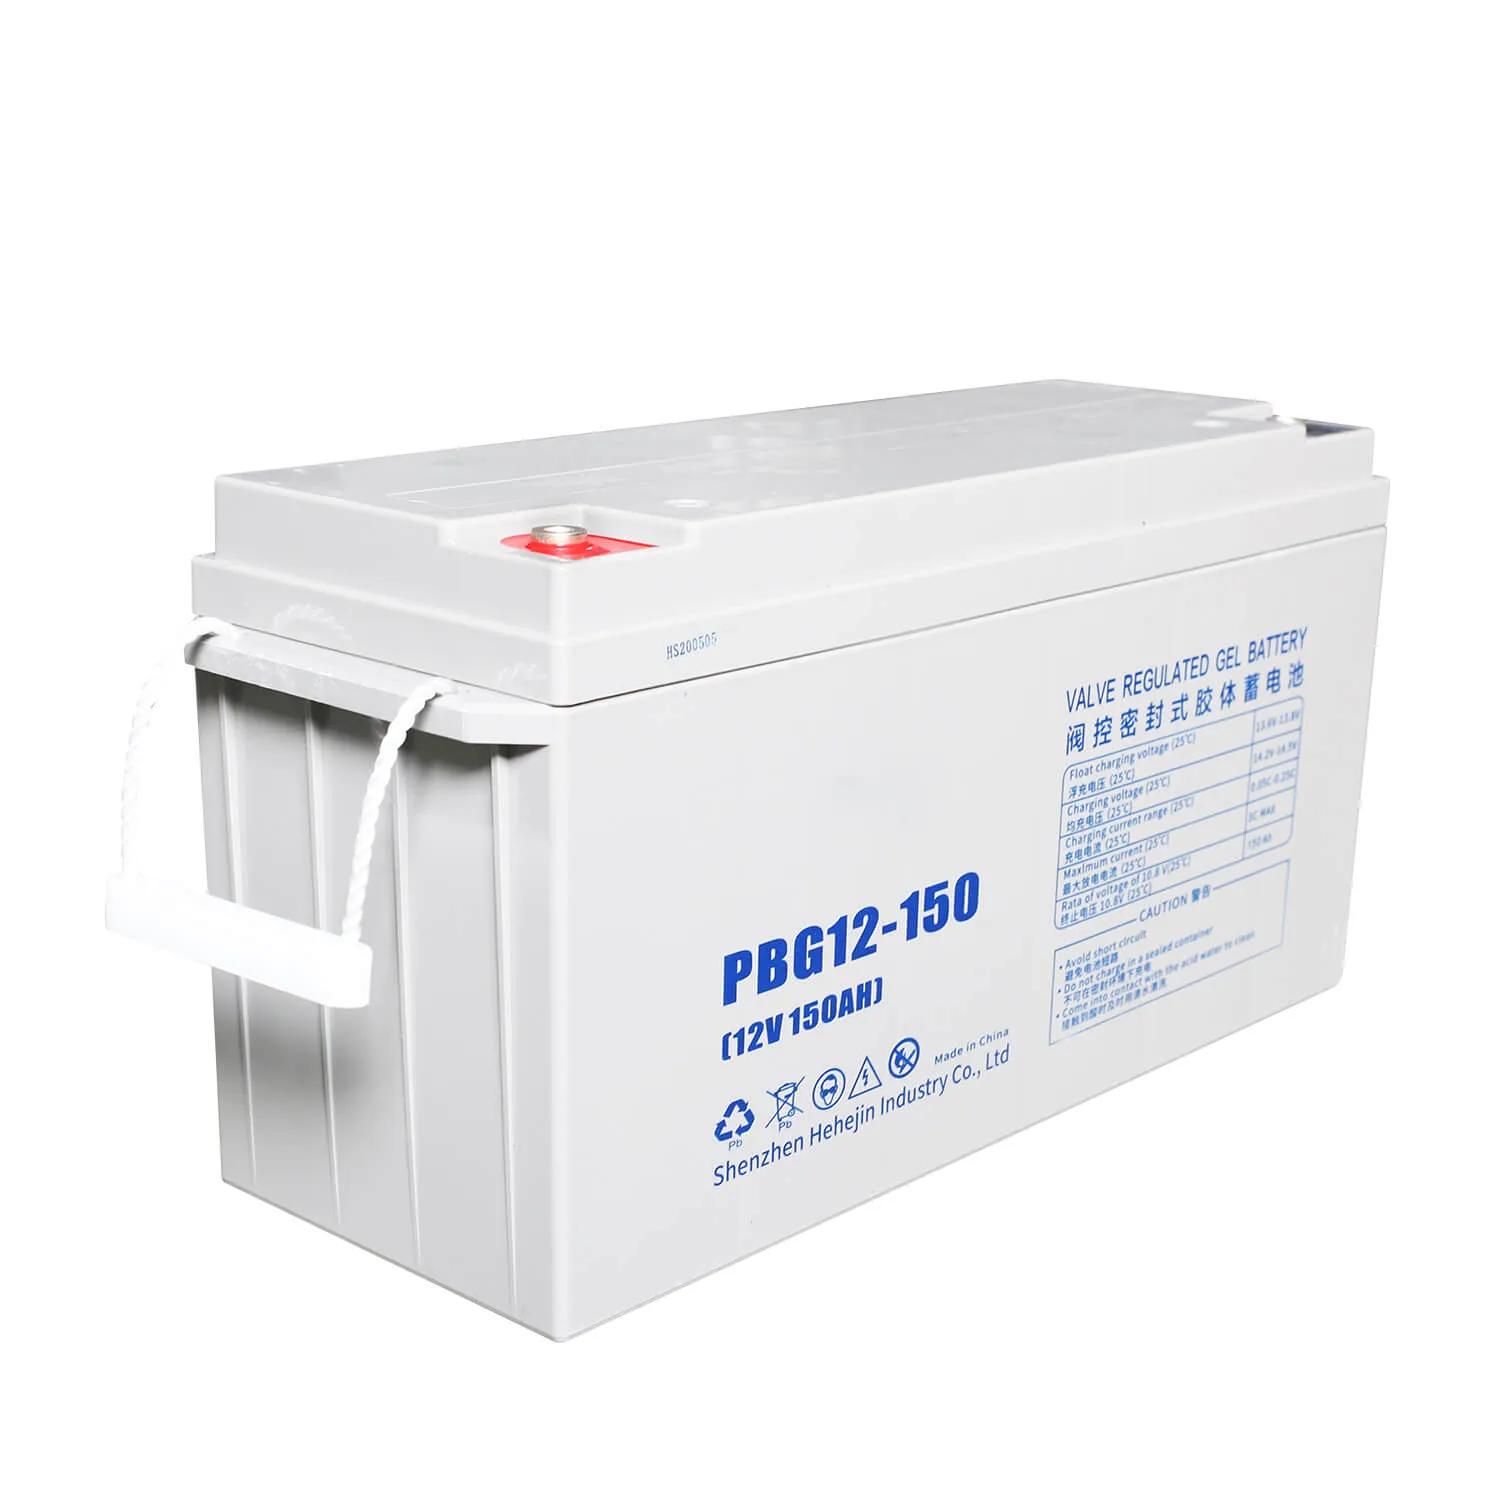 PowMr 150AH 12V Lead-acid GEL batteries